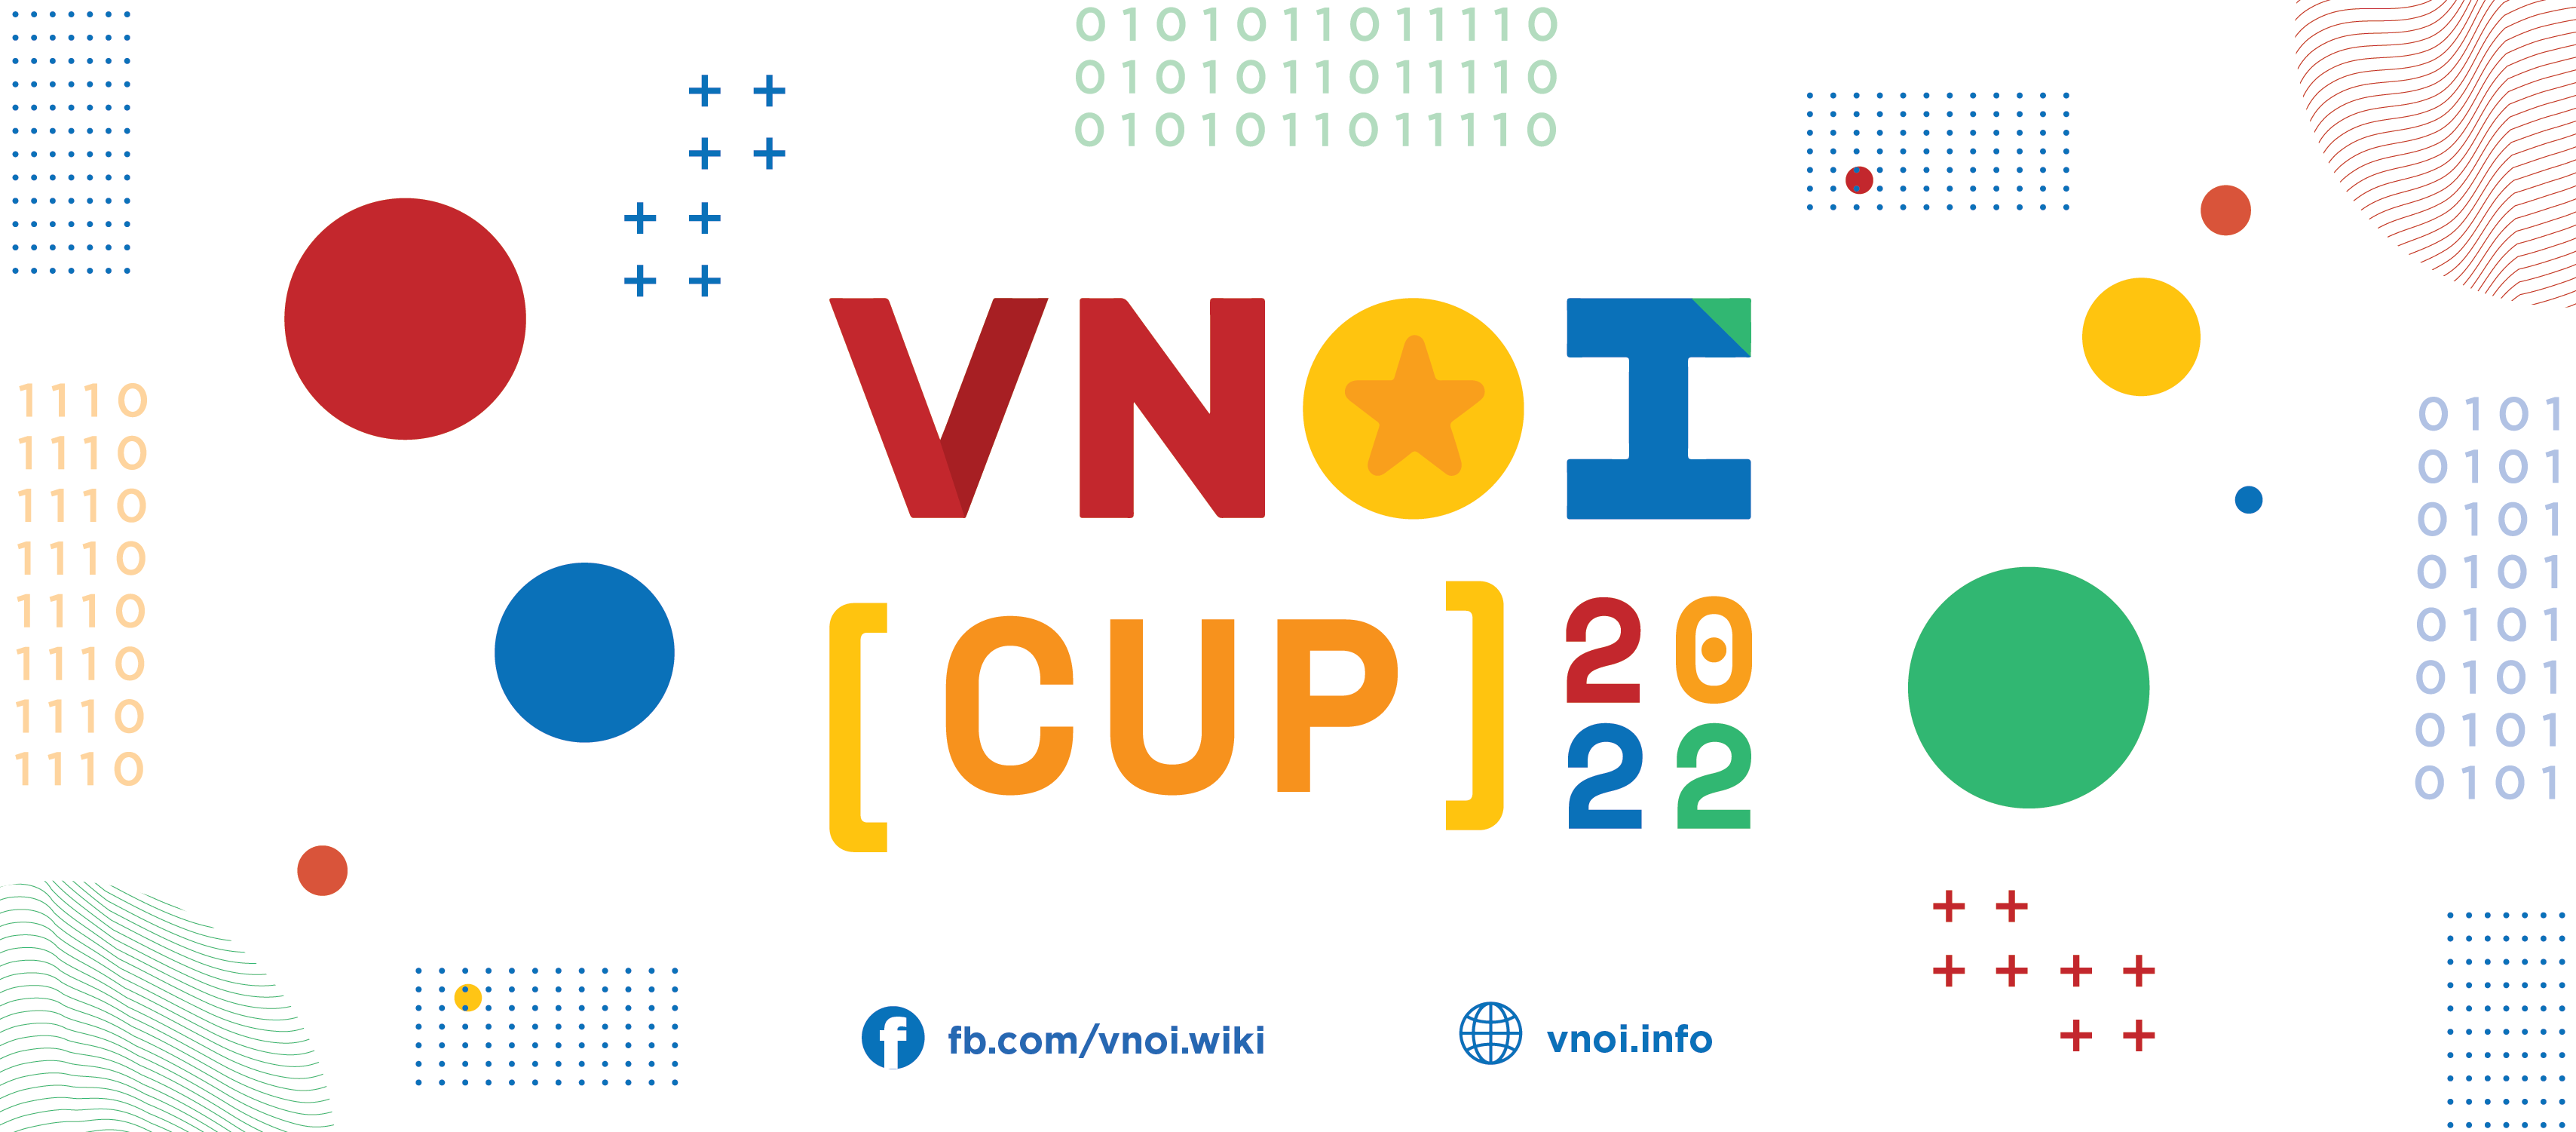 Chung kết VNOI Cup 2022 tổ chức tại Đà Nẵng vào tháng 7